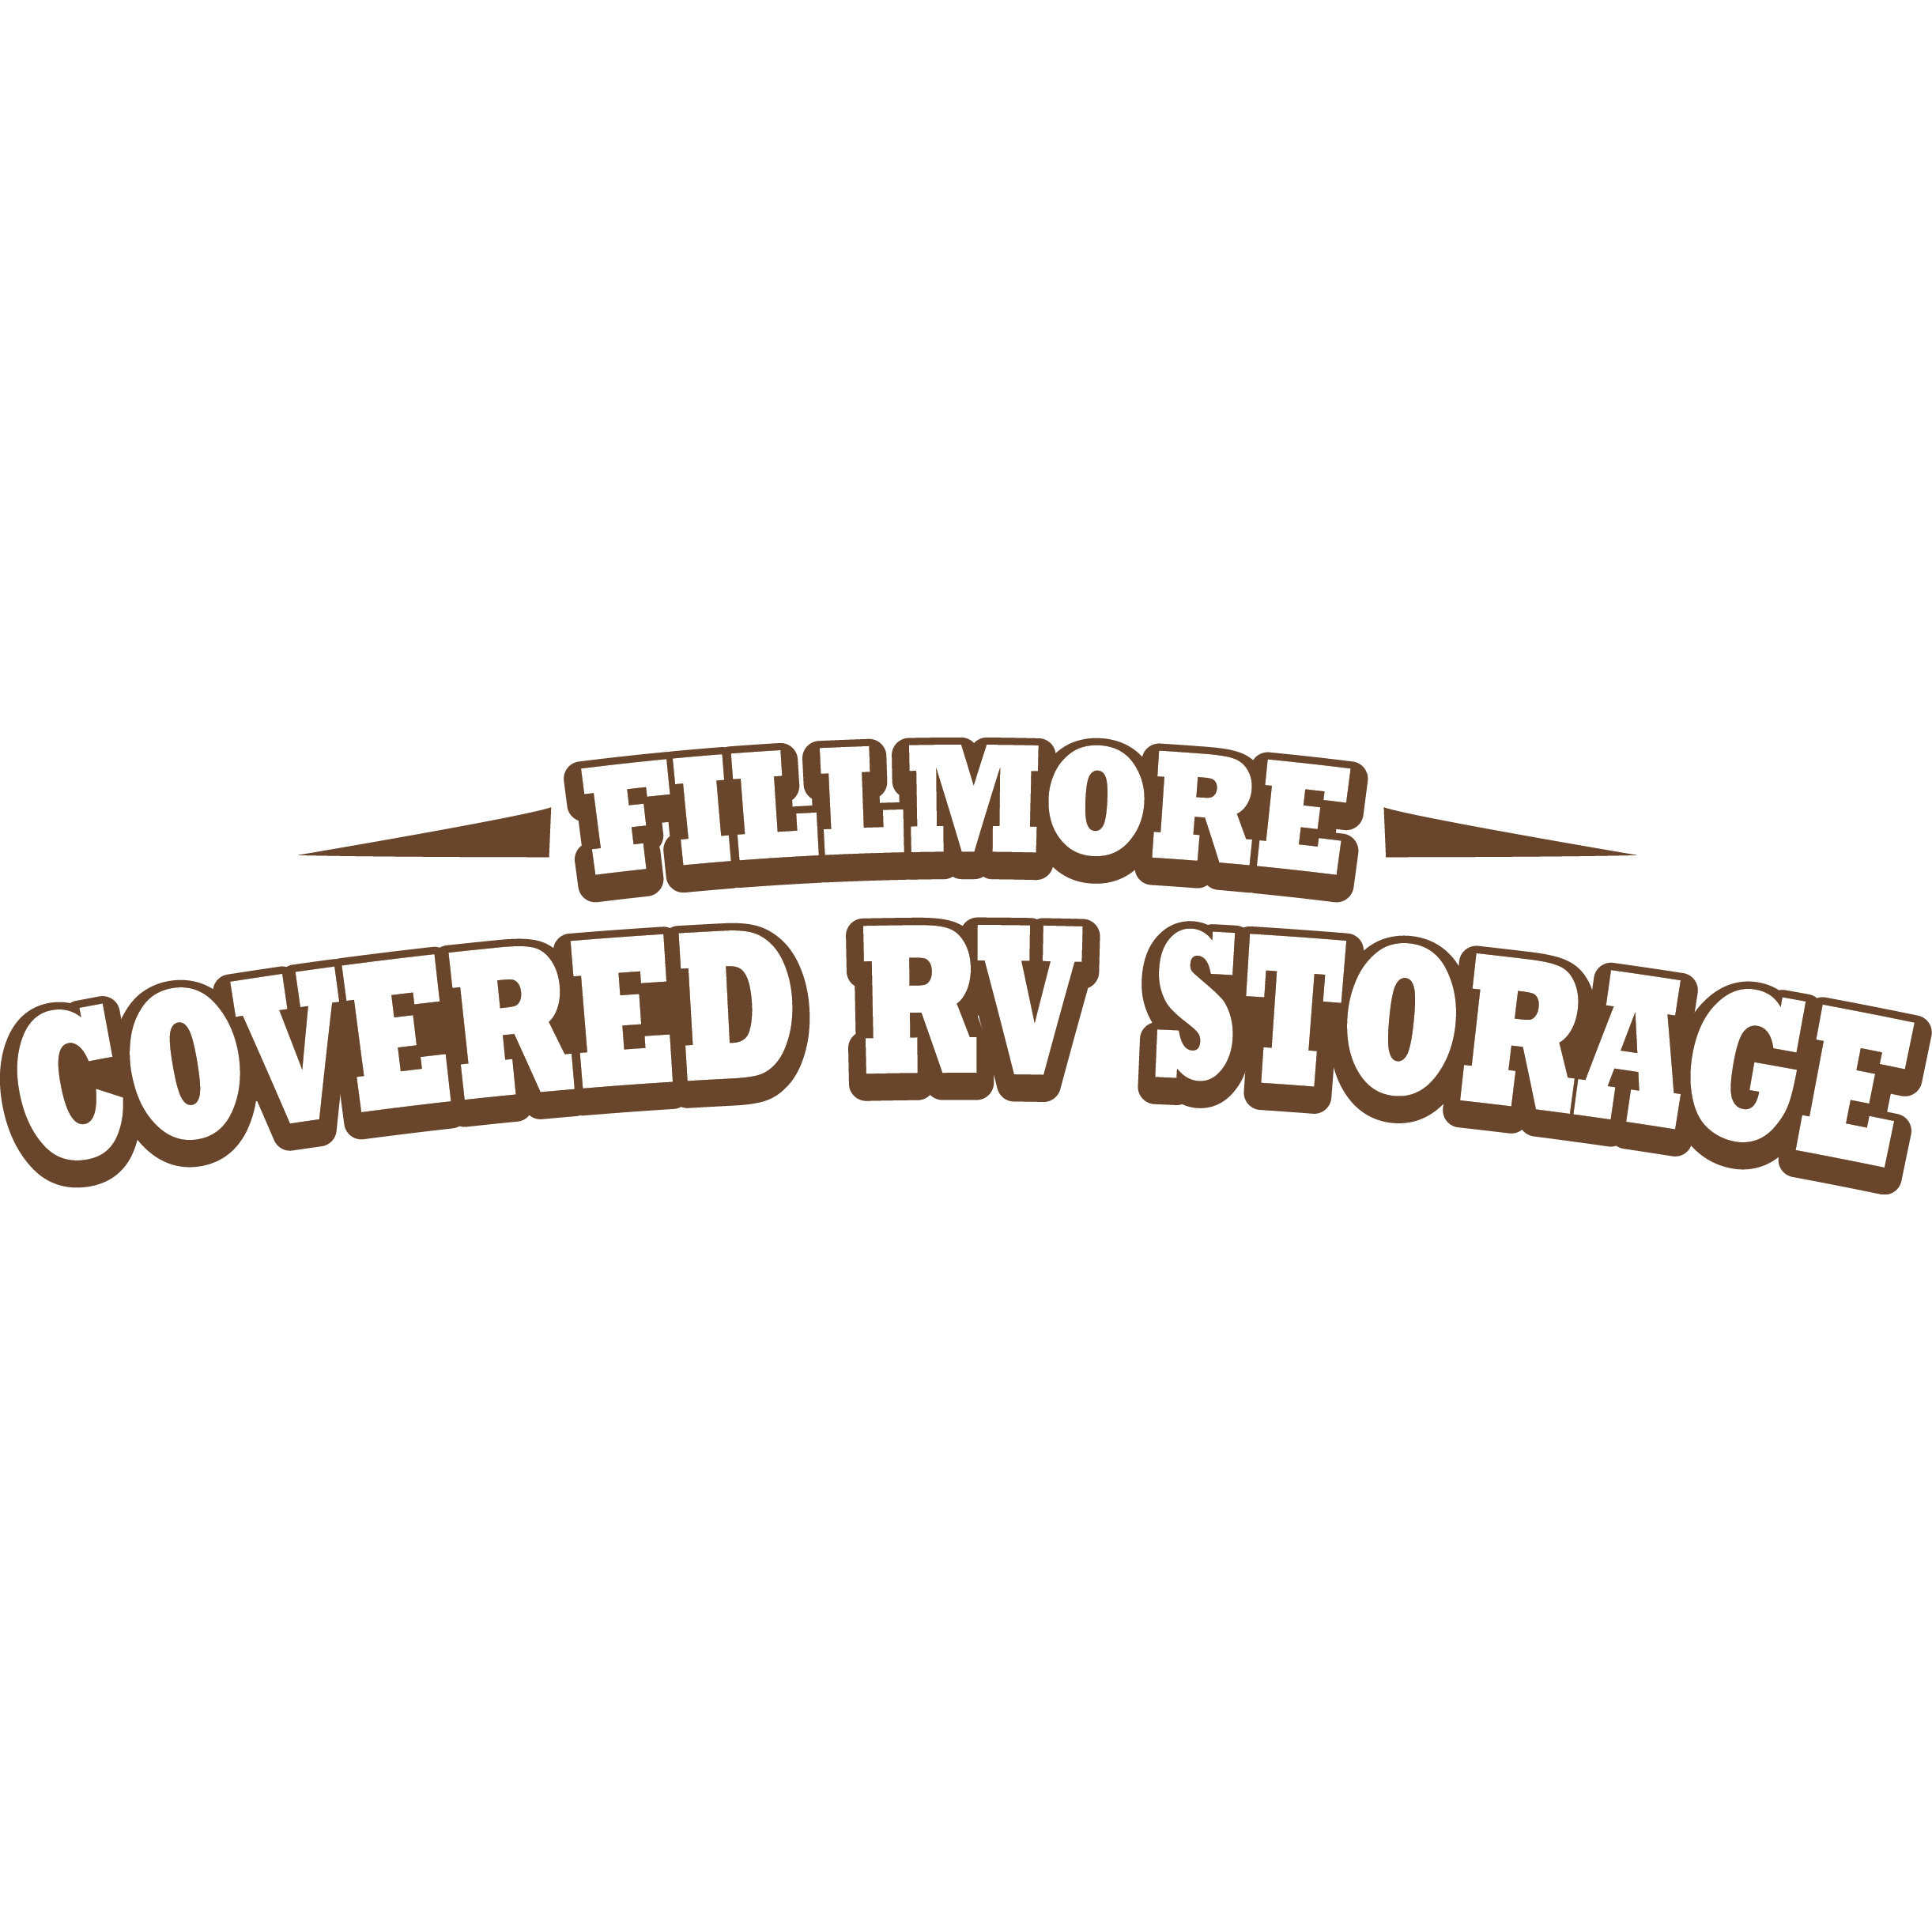 Fillmore Covered RV Storage - Colorado Springs, CO 80907 - (719)330-2245 | ShowMeLocal.com